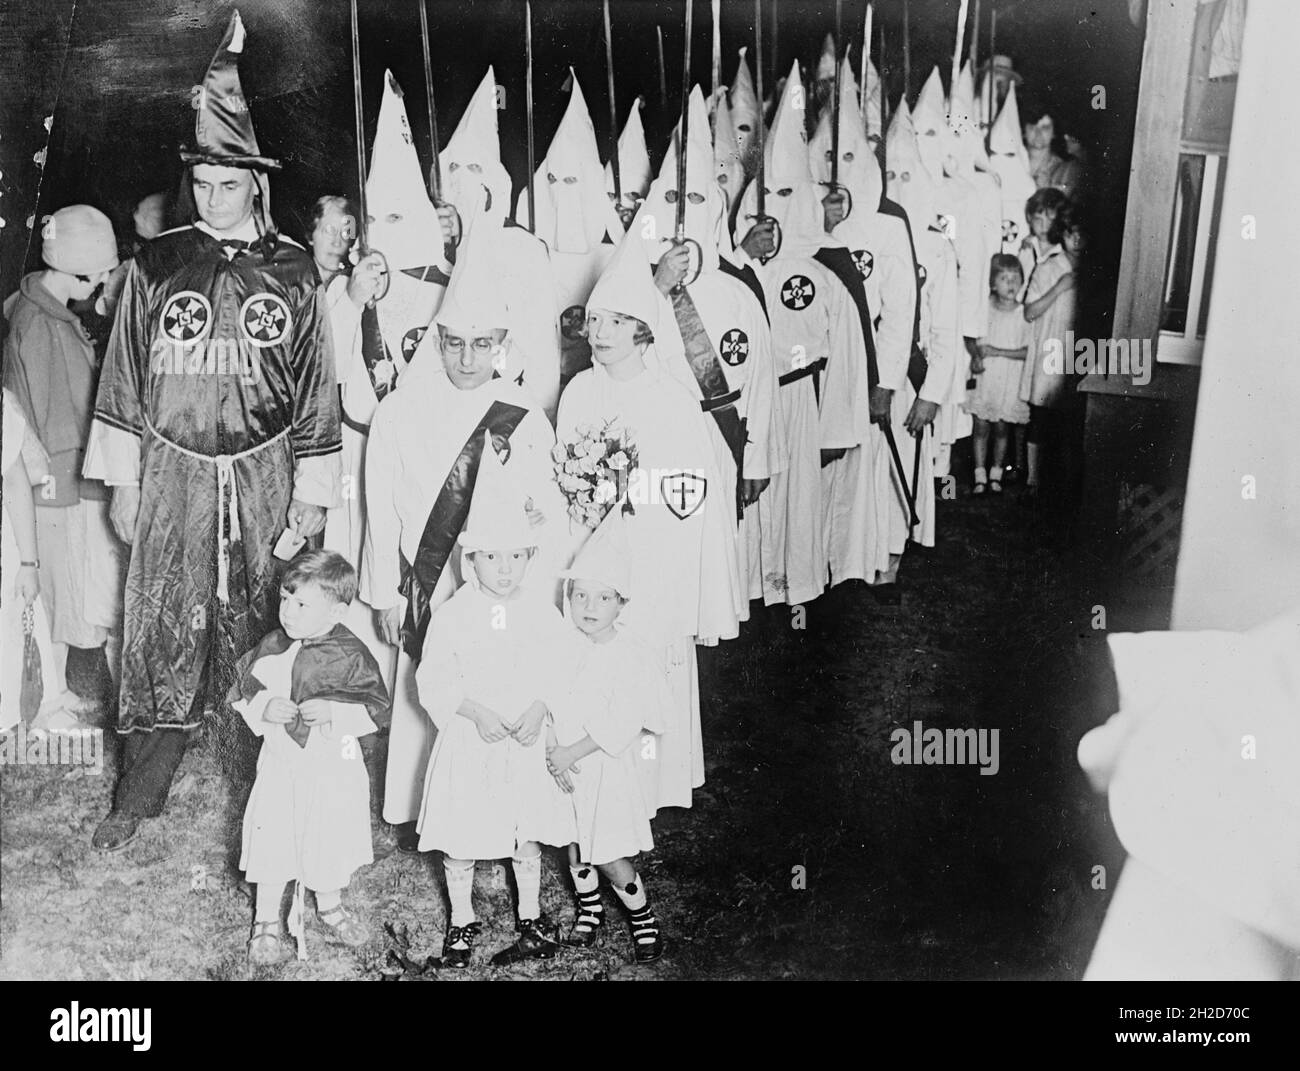 Foto vintage alrededor de 1924 mostrando a los miembros del Ku Klux Klan asistiendo a una boda con niños pequeños vestidos con batas y capuchas klan Foto de stock